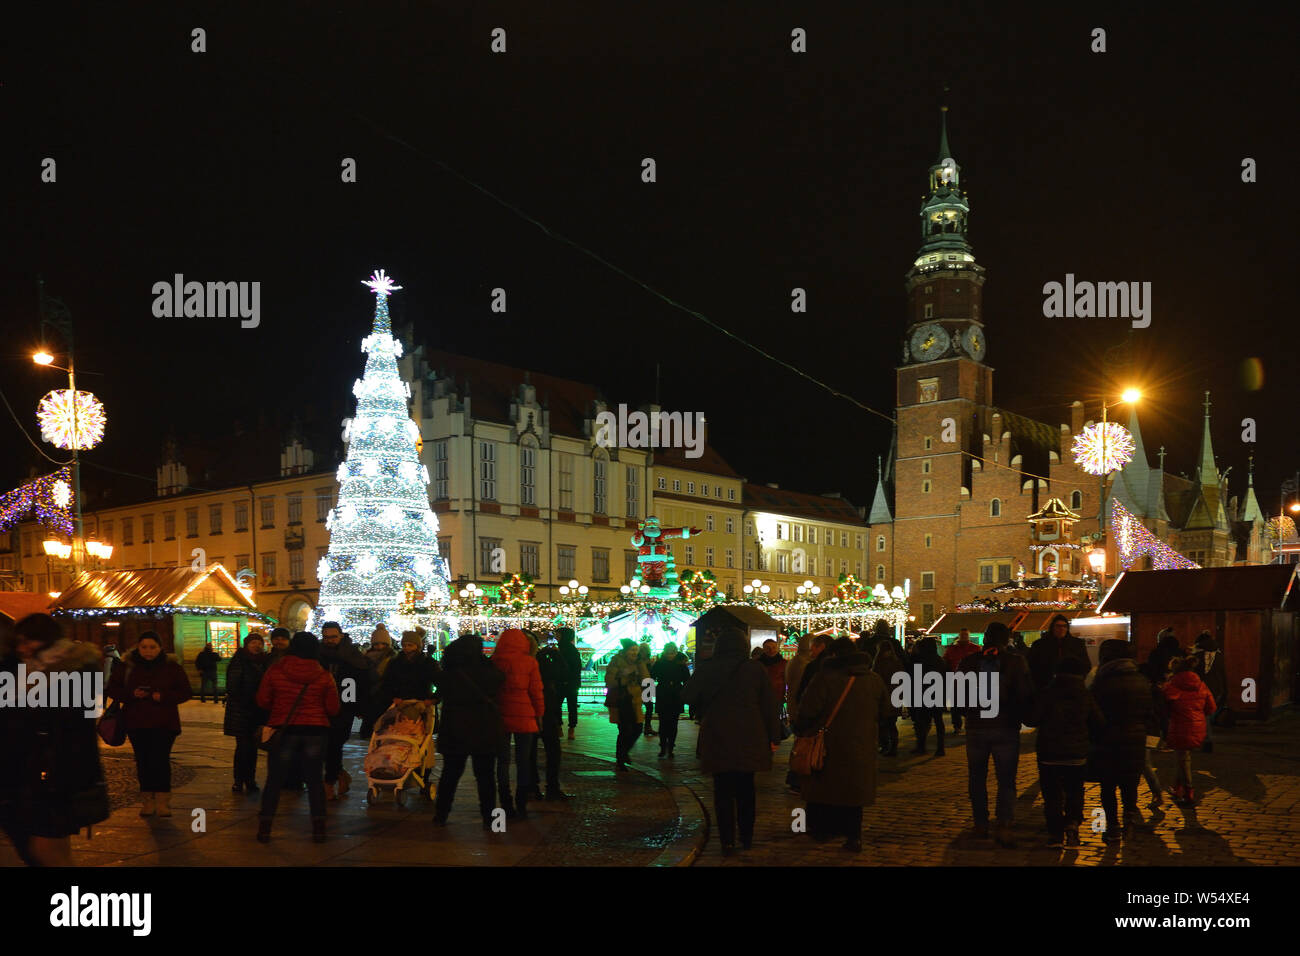 Weihnachtsmarkt vor dem Rathaus in der Altstadt von Breslau am Abend - Polen. Stockfoto